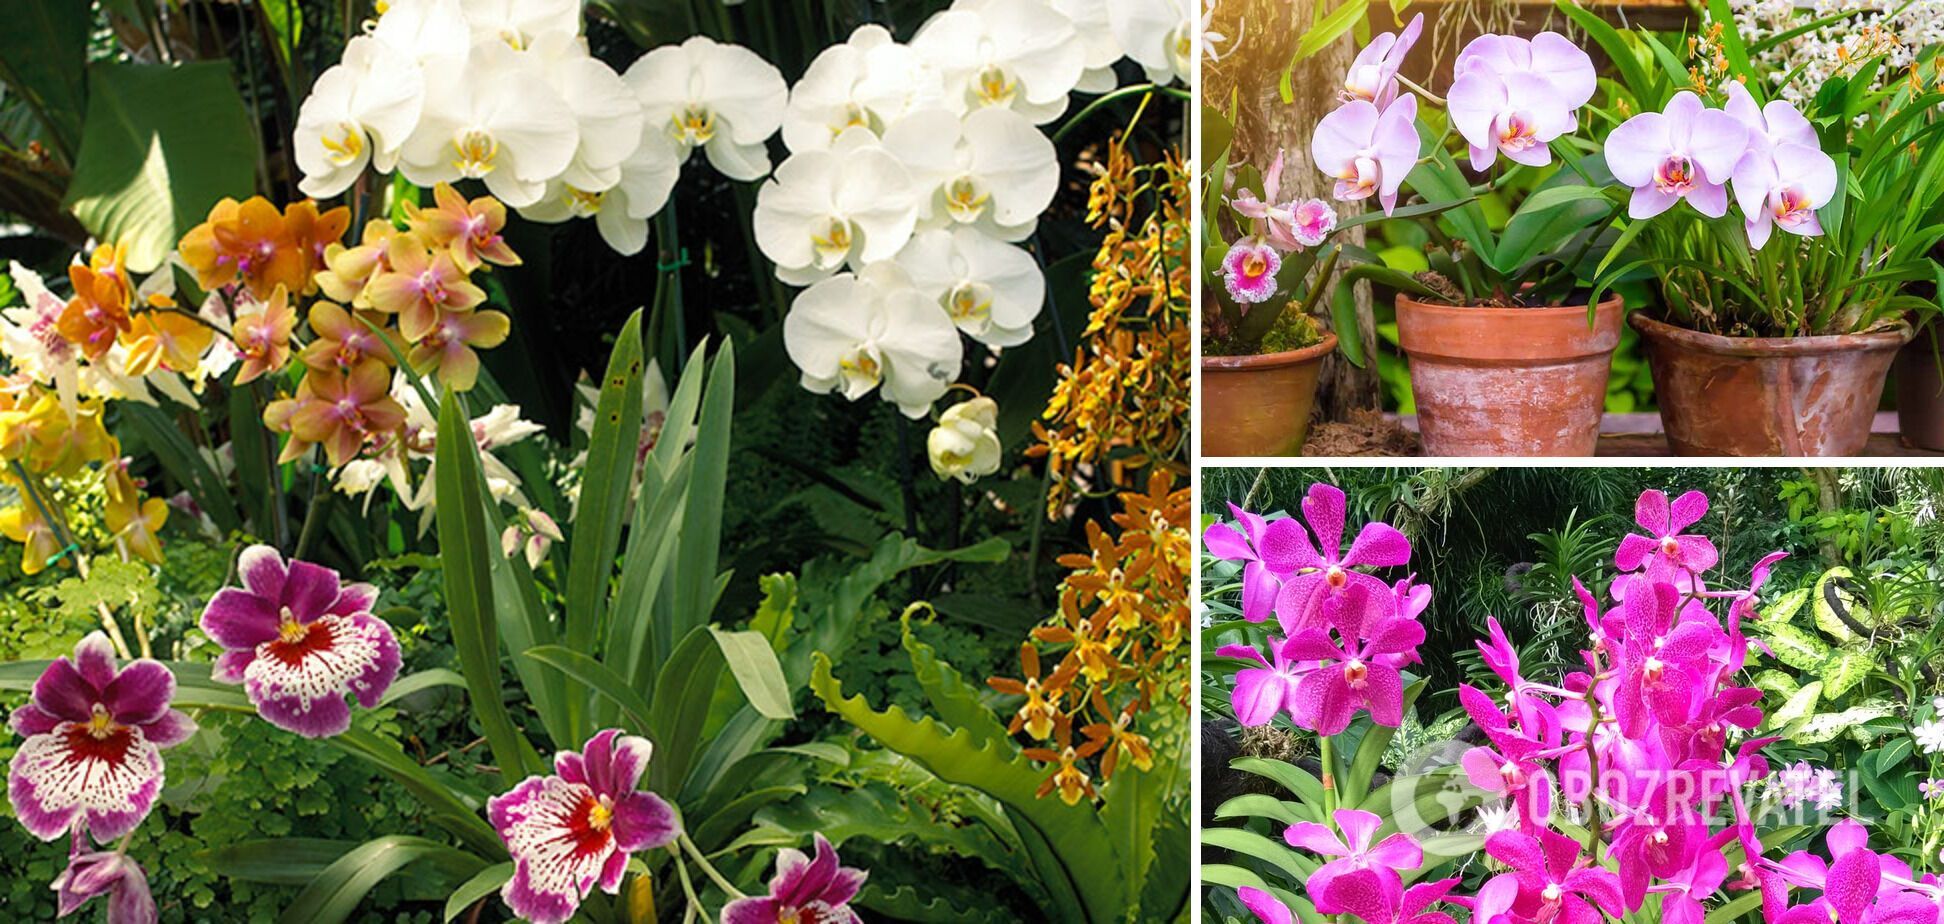 Как определить возраст орхидеи дома и в магазине: простой способ